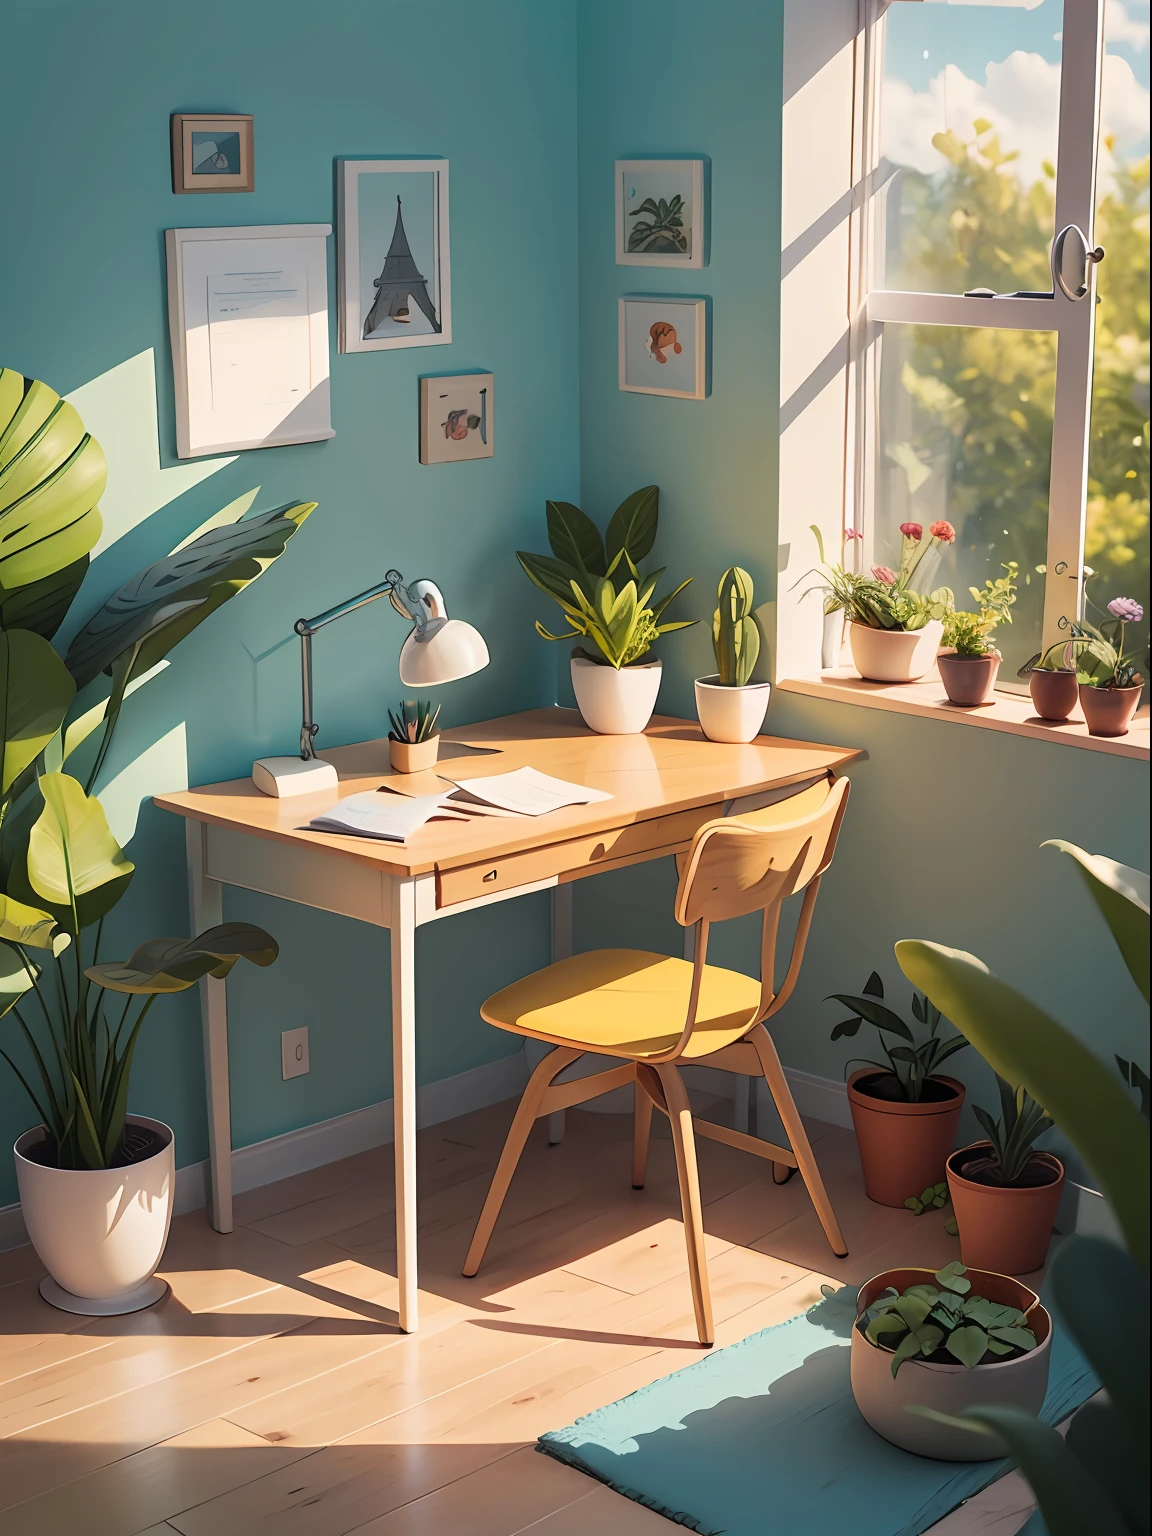 卡通風格繪製的桌子插圖. 添加自然元素, 作為植物和花卉, 並使用柔和的色調營造輕鬆的氛圍.